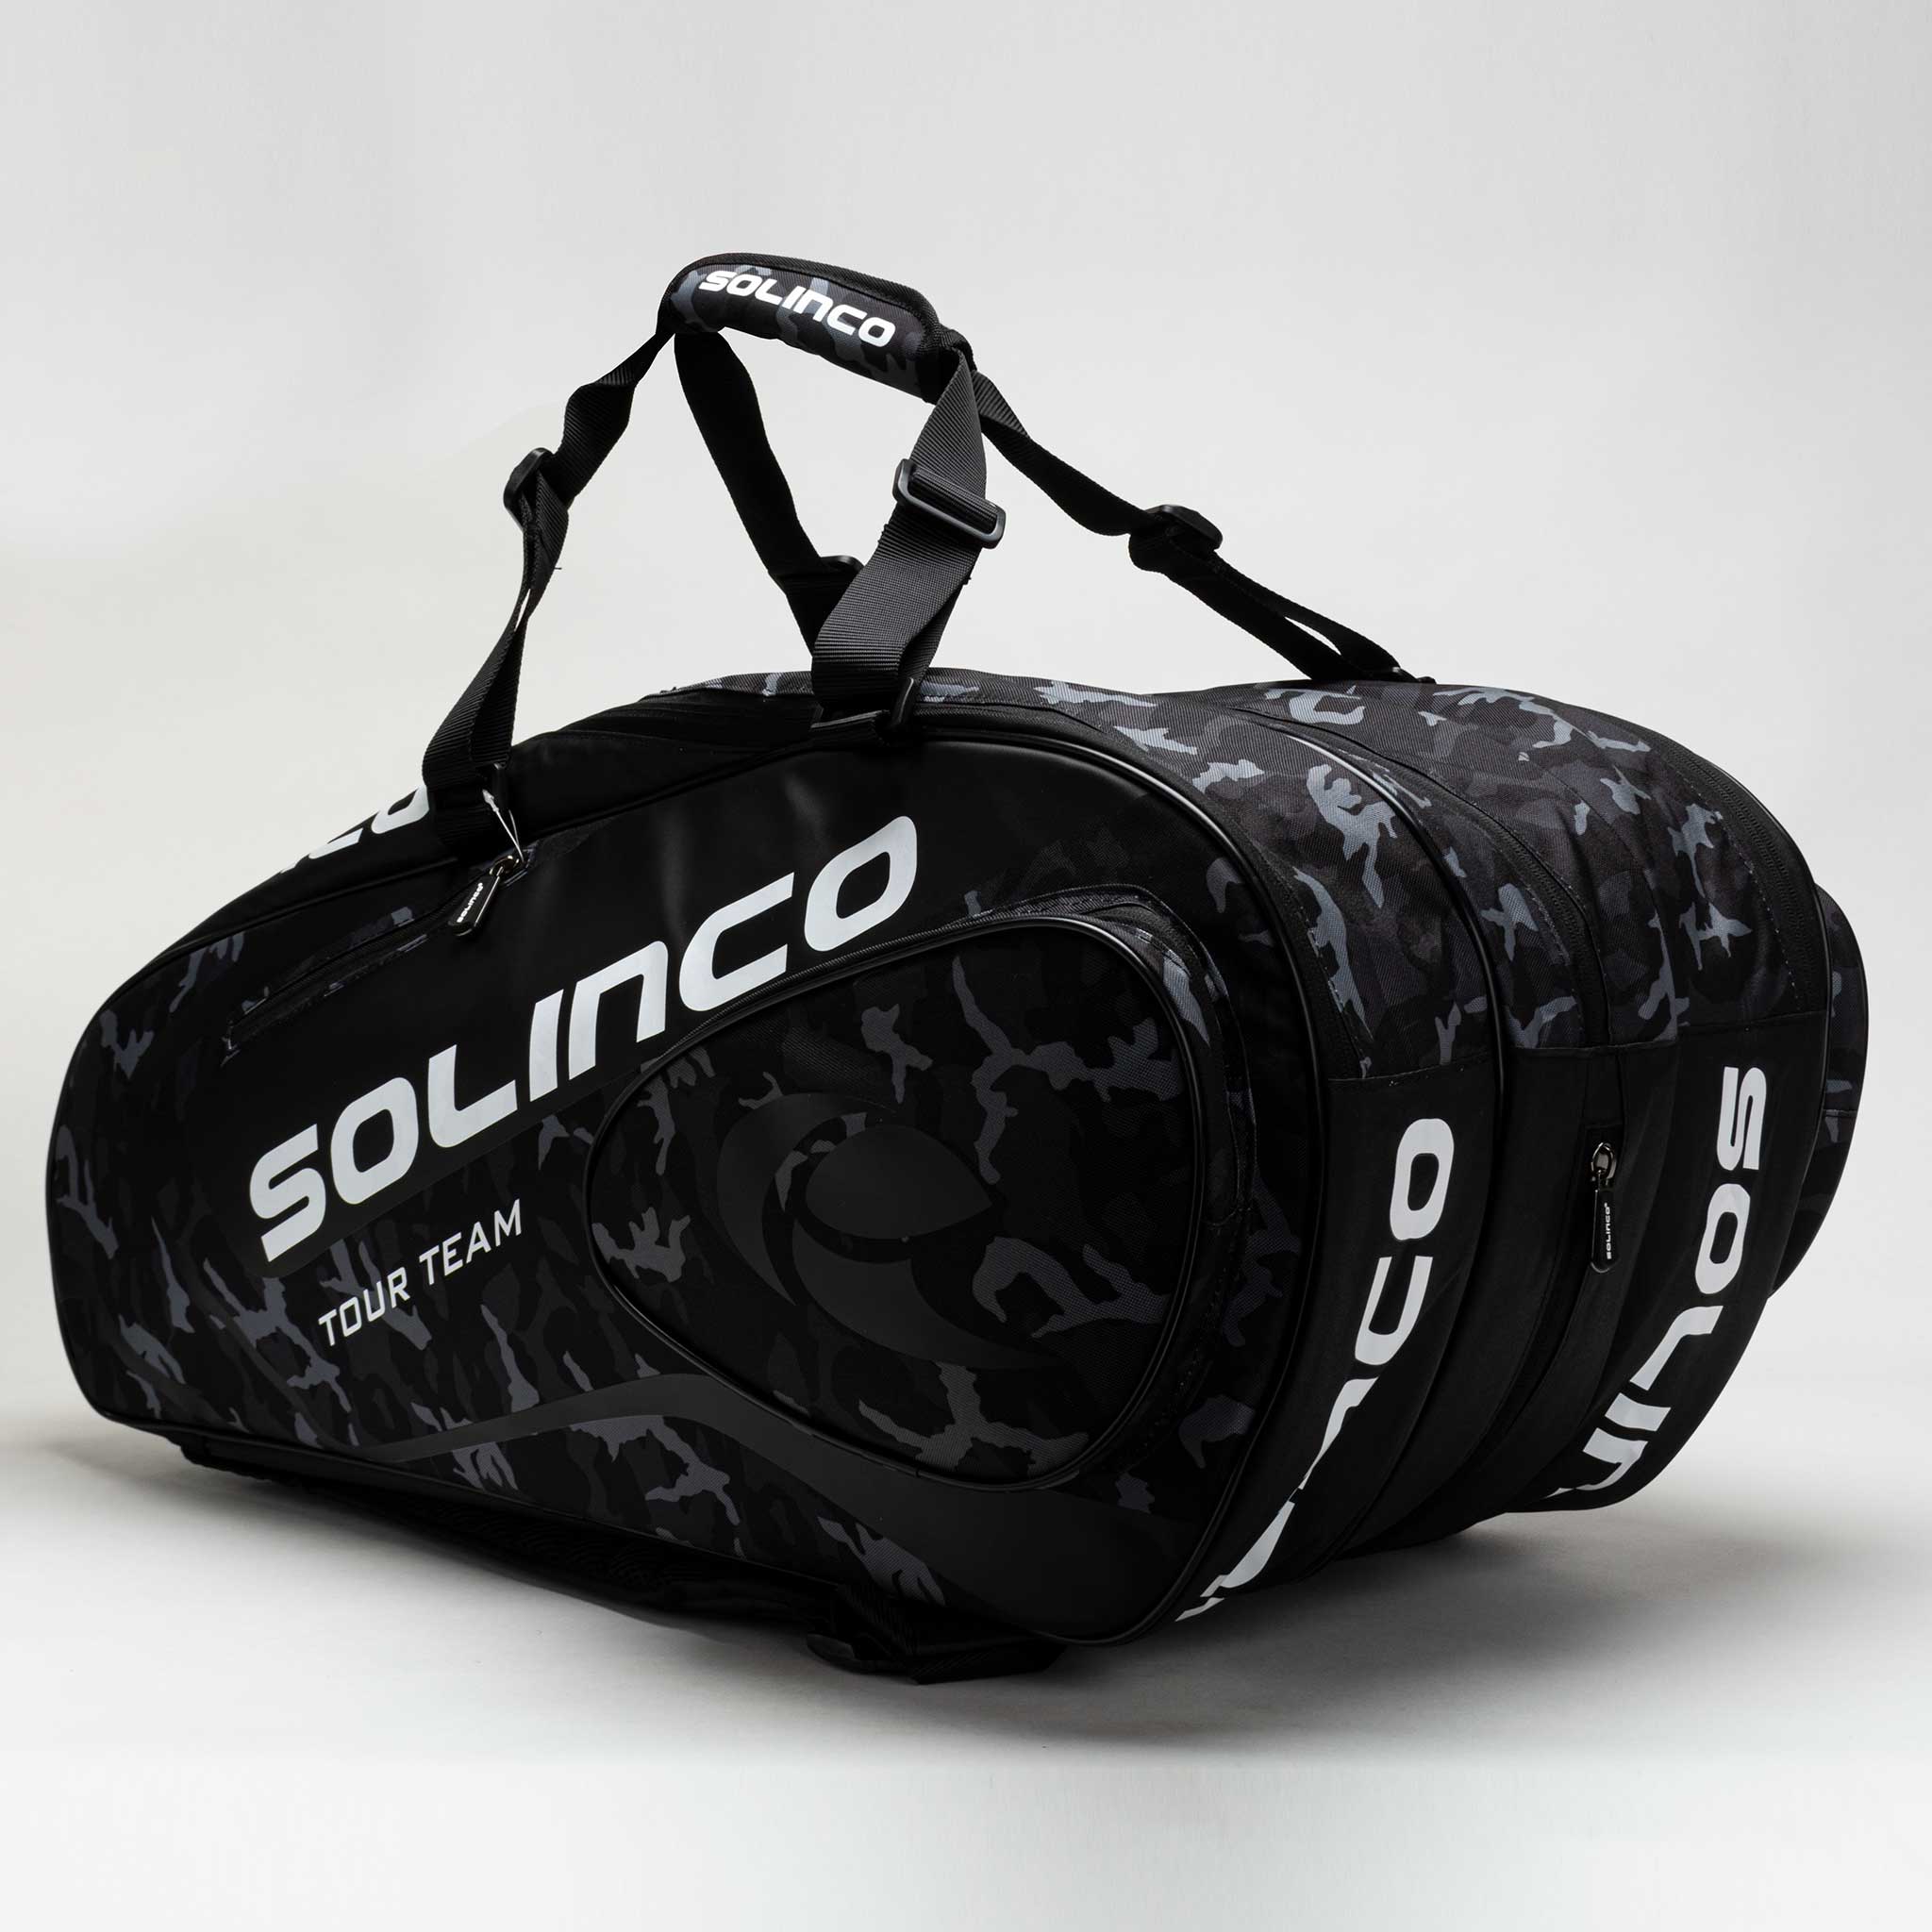 Solinco Tour 15 Pack Bag Black Camo